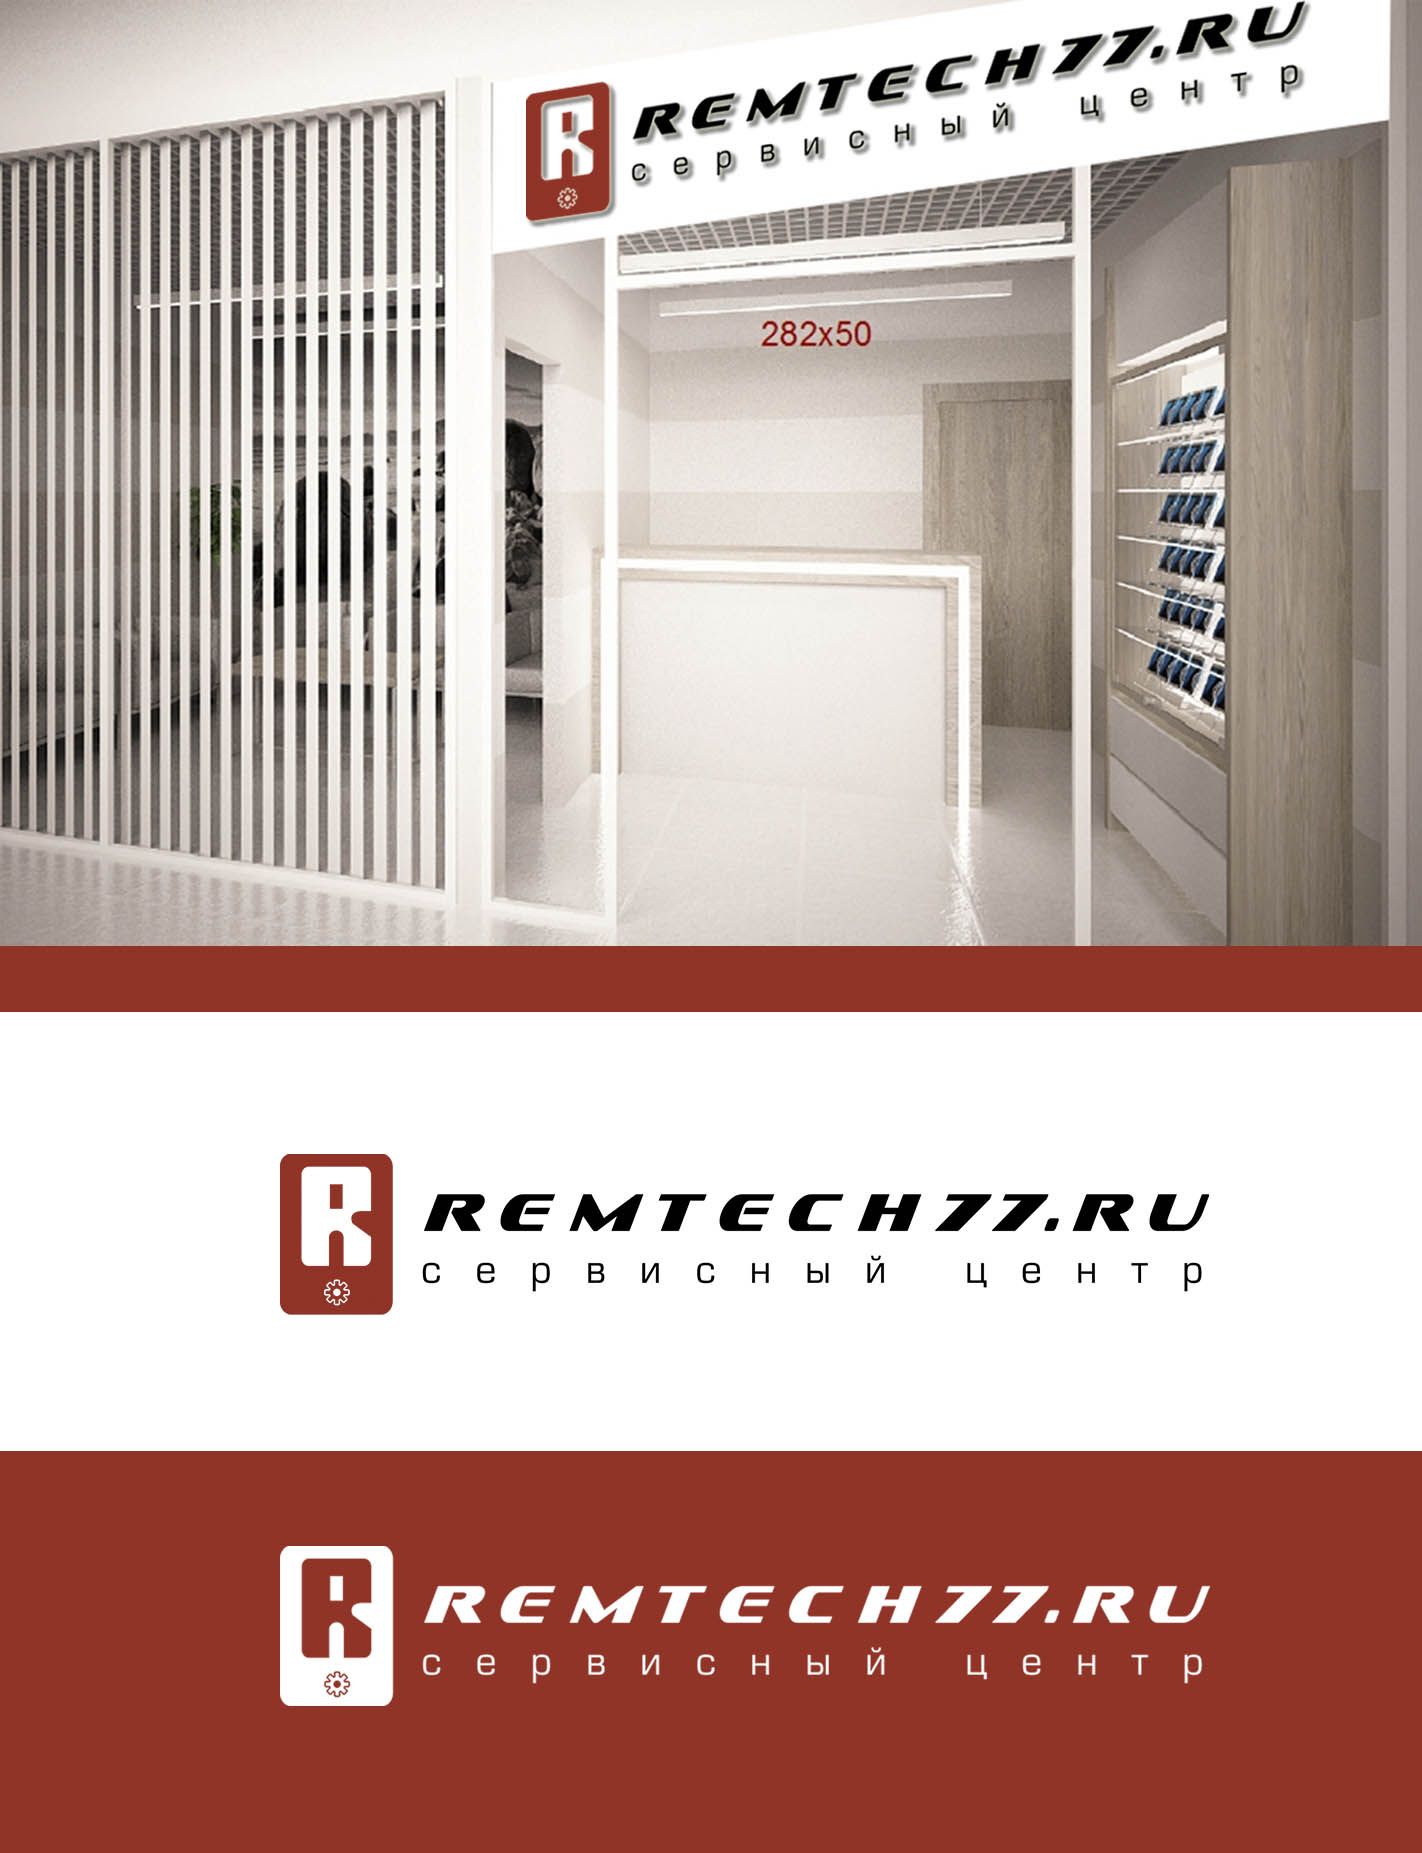 Лого и фирменный стиль для Логотип для СЦ remtech77.ru - дизайнер SmolinDenis